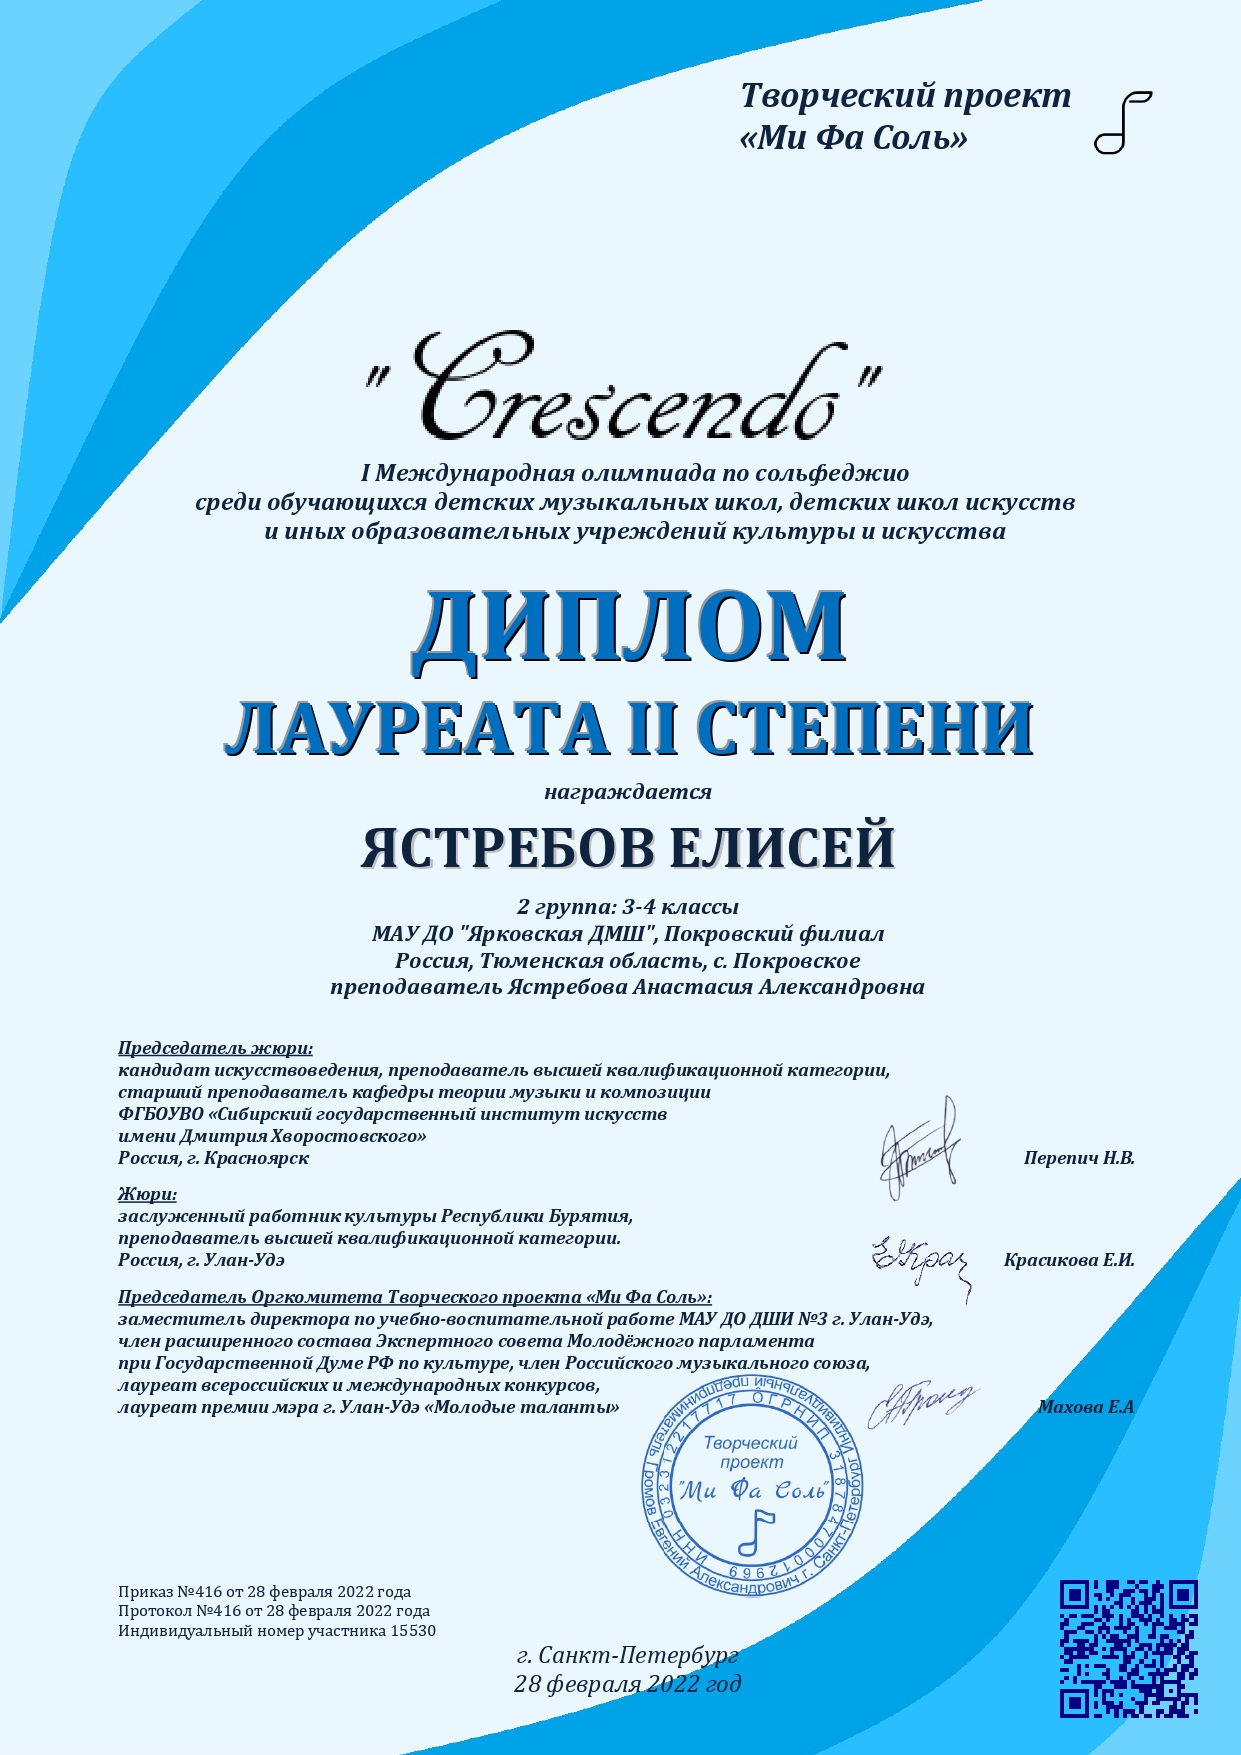 Ястребов Елисей 15530 Сертификат Crescendo 2022 page 0001